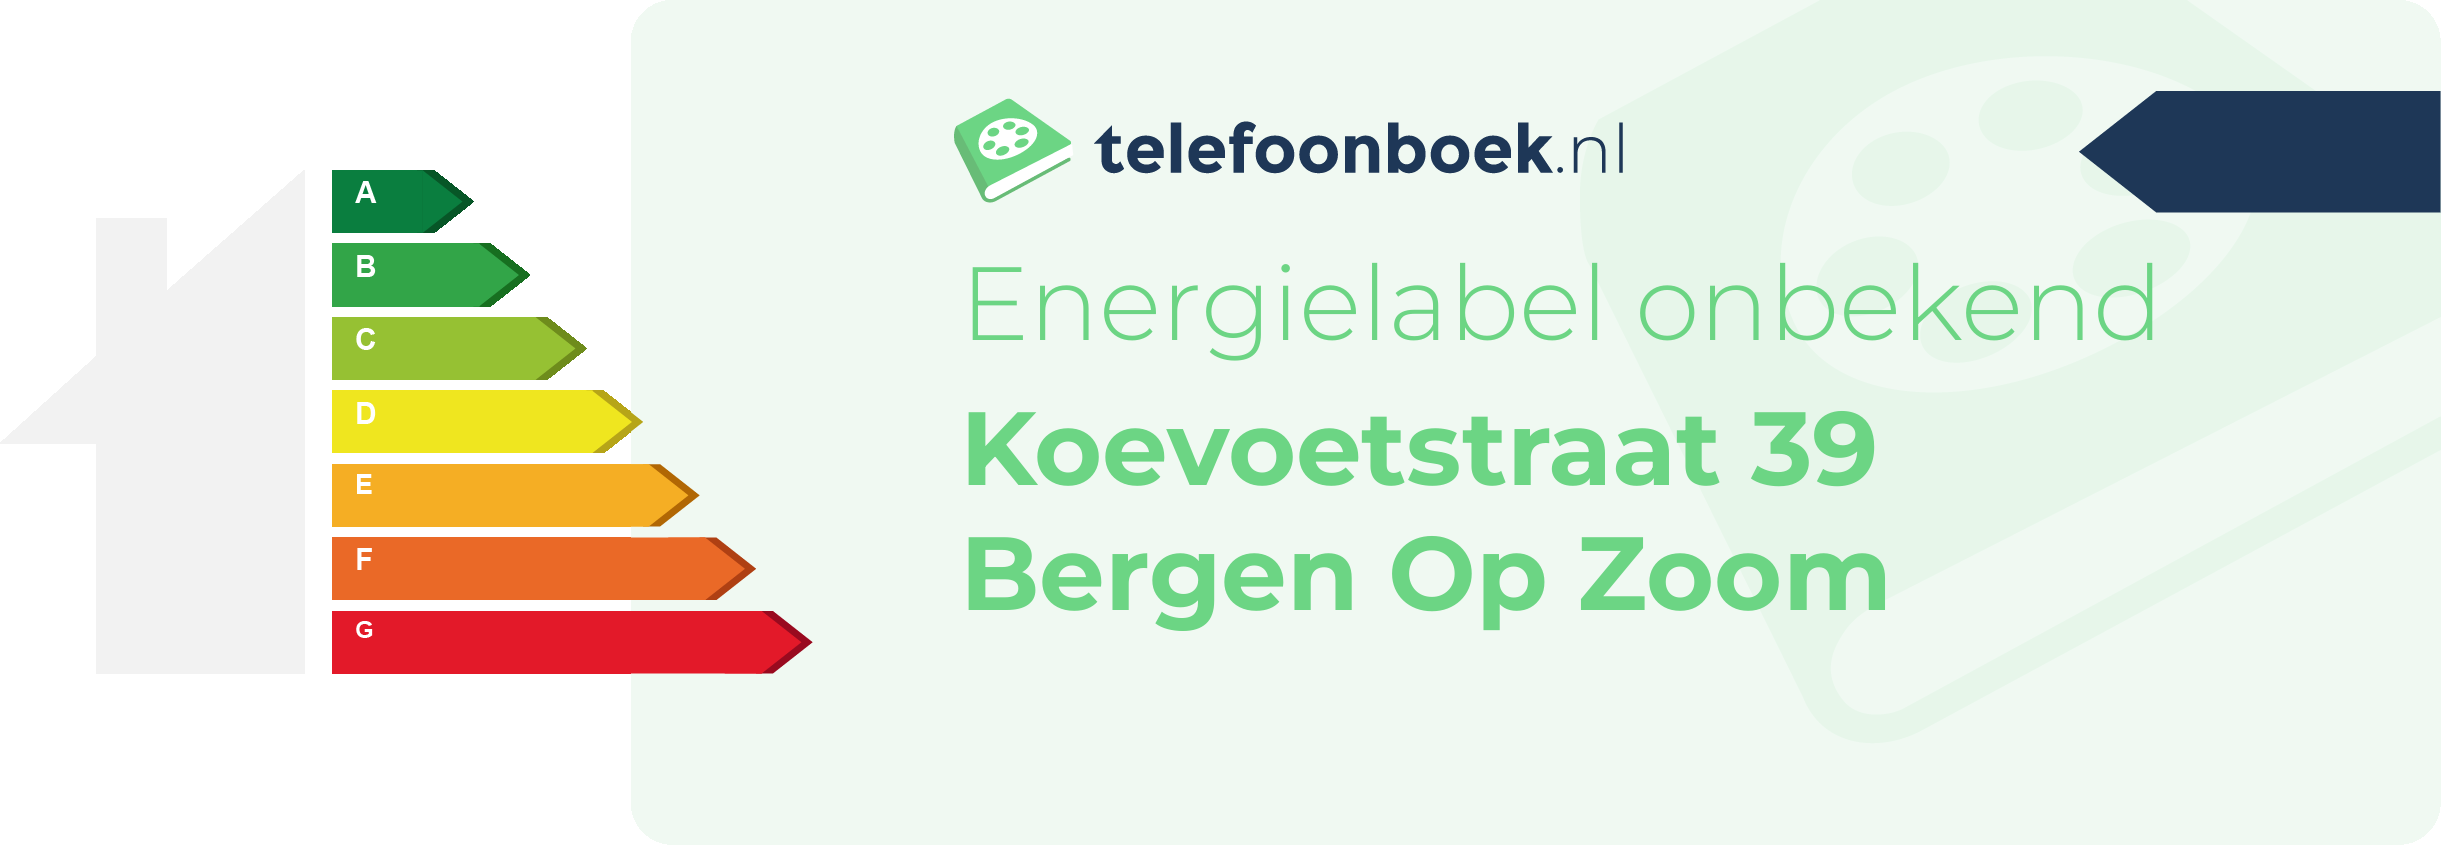 Energielabel Koevoetstraat 39 Bergen Op Zoom